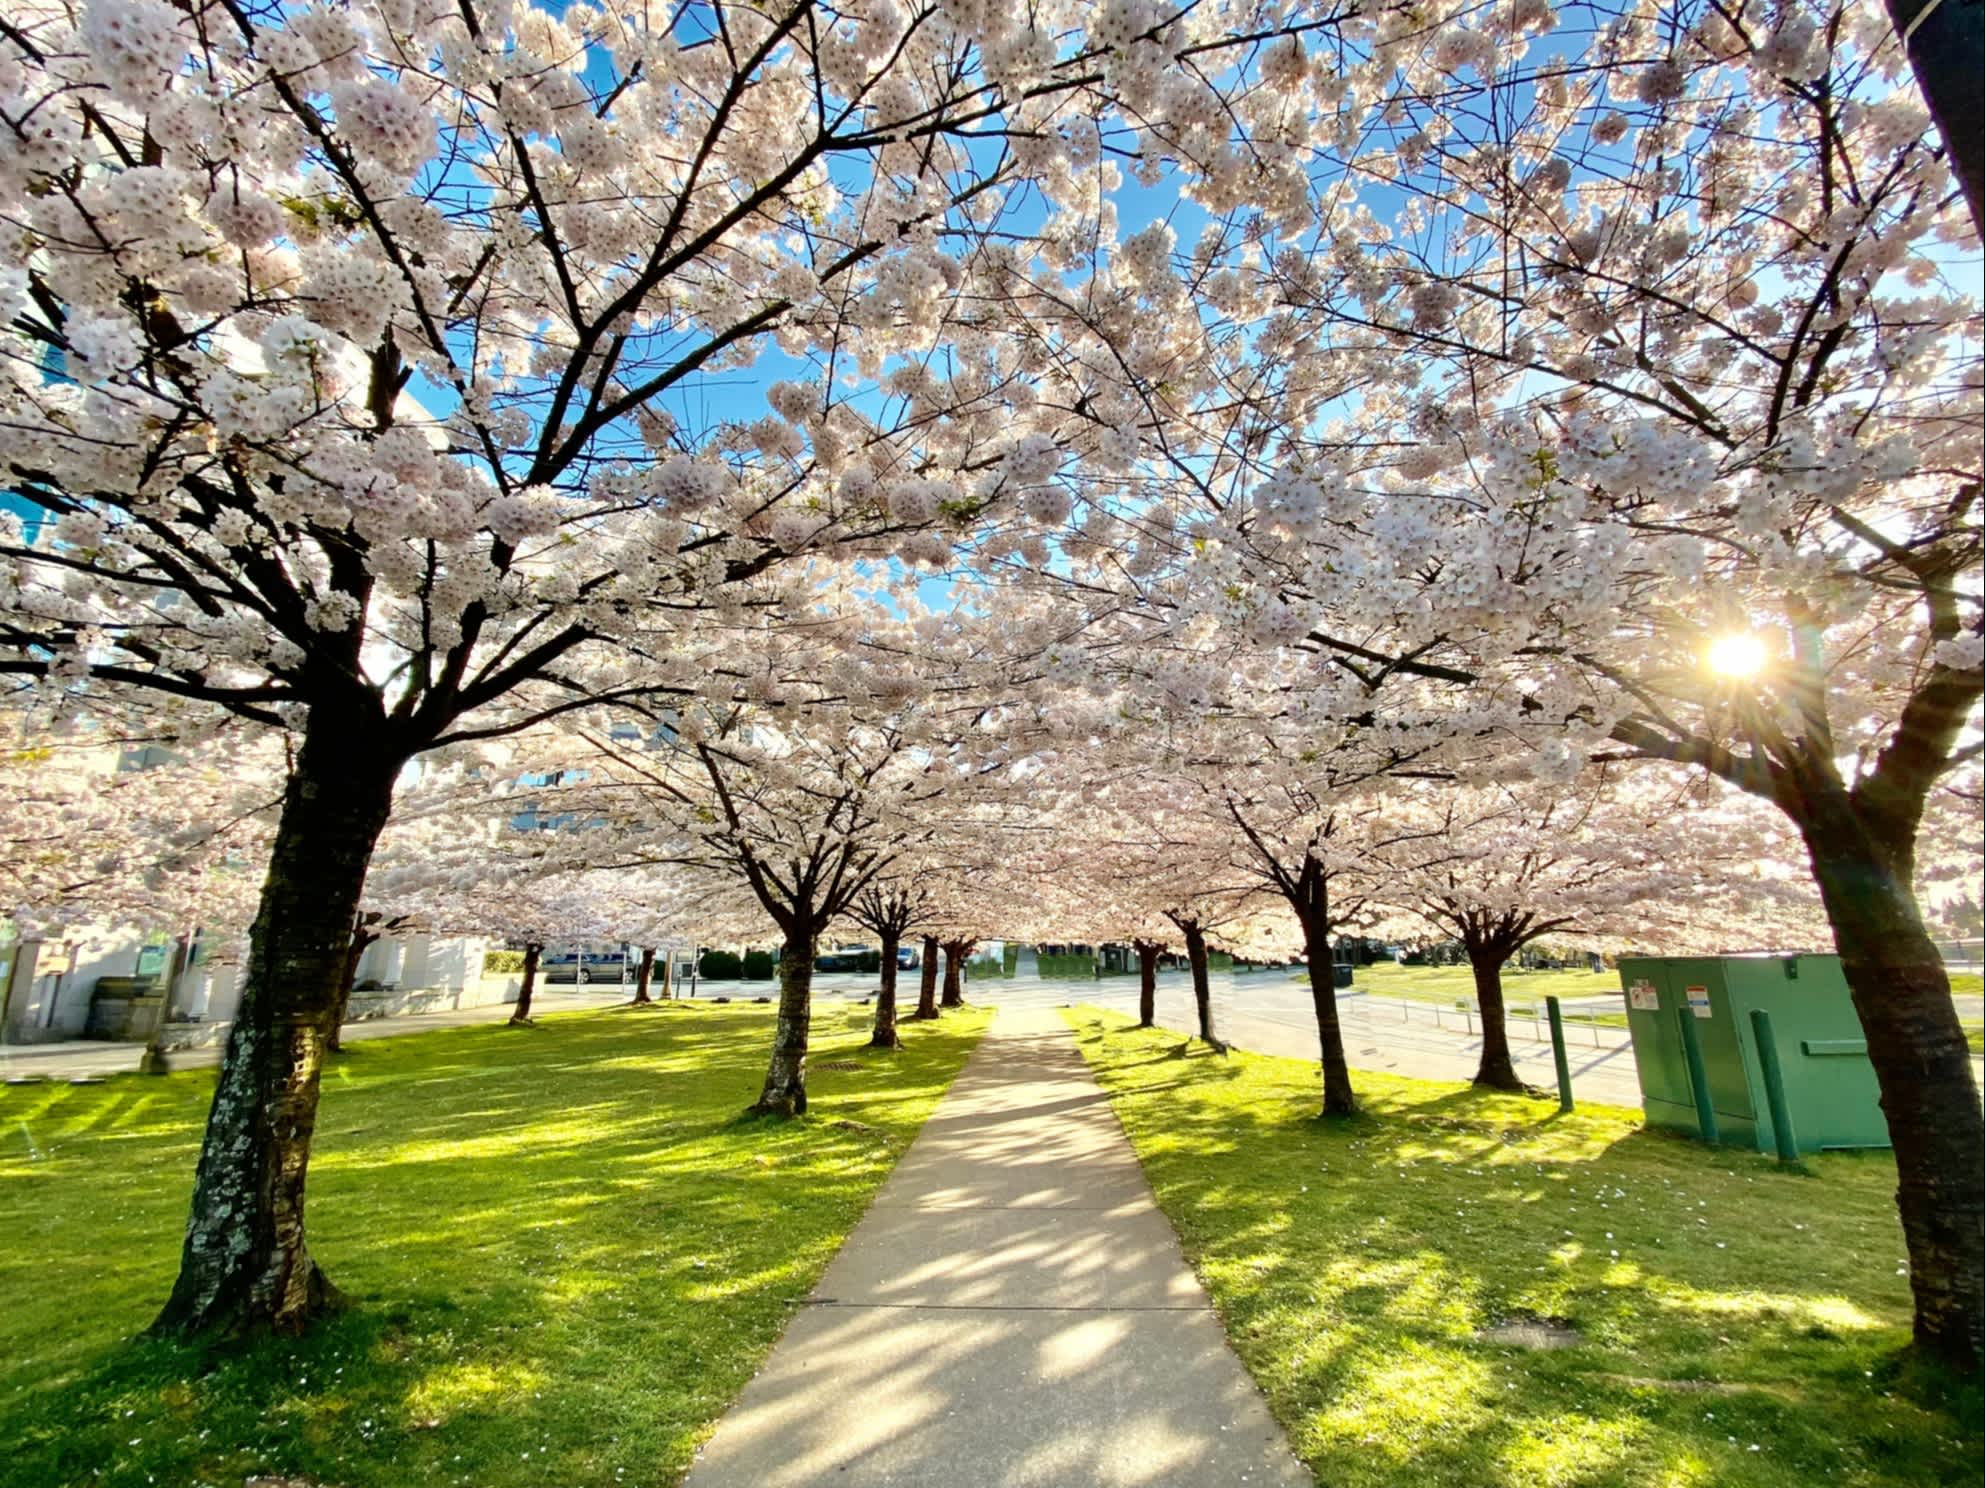 Cerisiers en fleurs dans un parc.